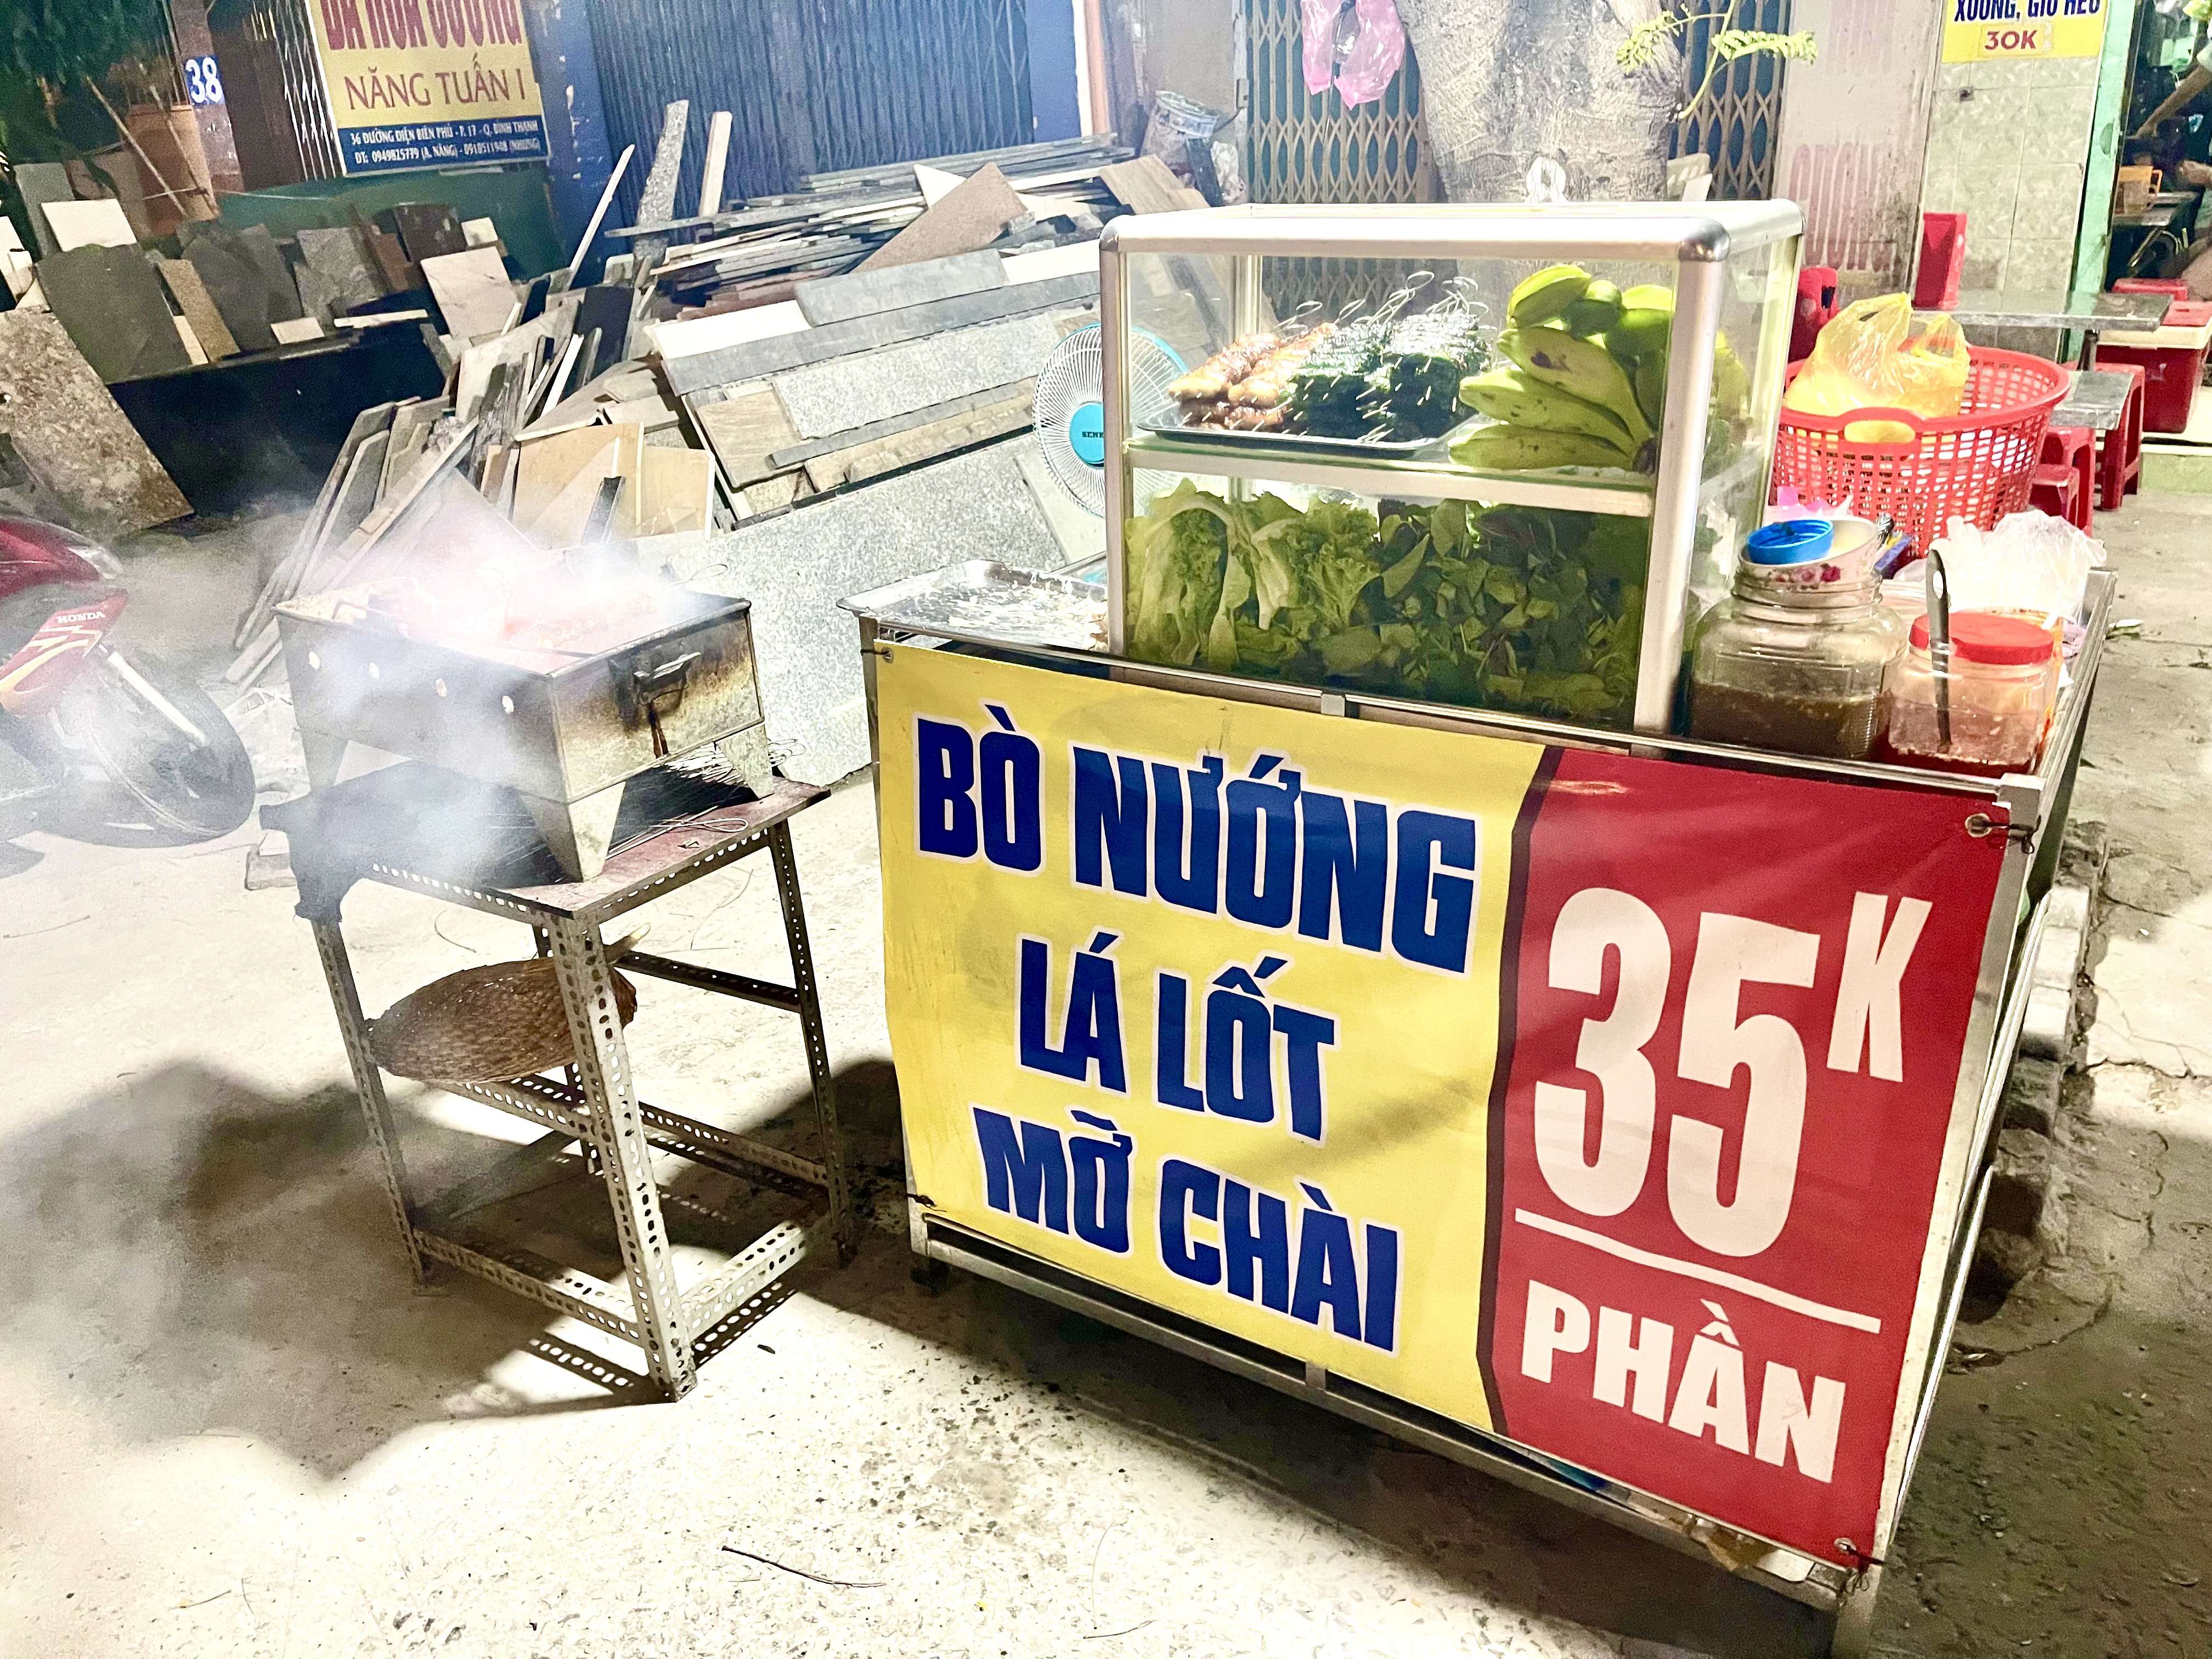 A photo capture a stall selling 'bò nướng lá lốt' and 'bò nướng mỡ chài' on the street in Ho Chi Minh City. Photo: Jordy Comes Alive